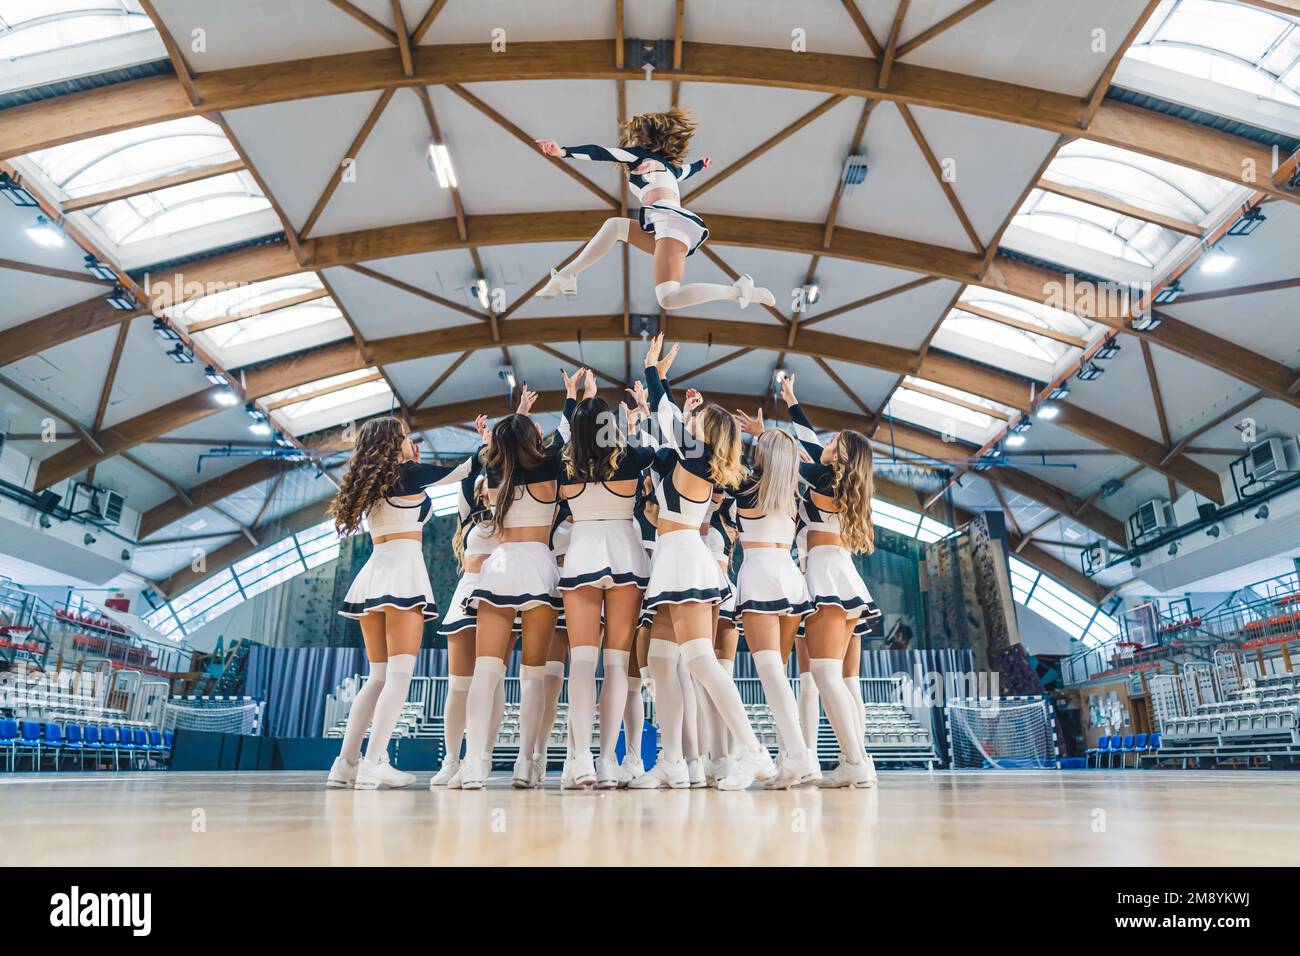 Colpo pieno di una squadra cheerleading hrowin uno dei loro compagni di squadra in alto in aria. Concetto sportivo. Foto di alta qualità Foto Stock